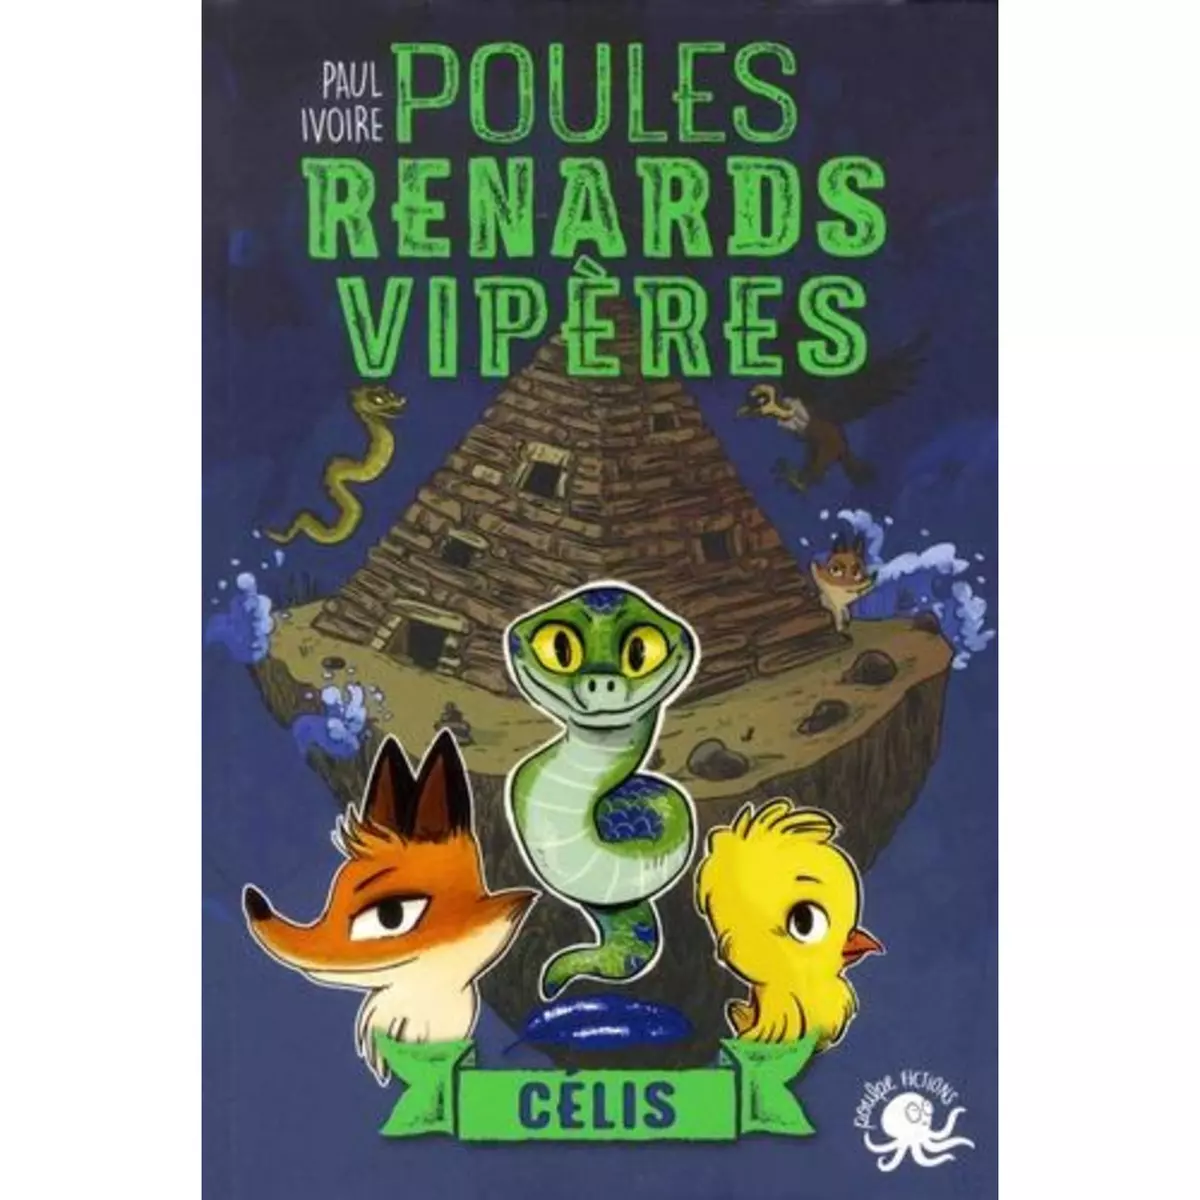  POULES, RENARDS, VIPERES TOME 3 : CELIS, Ivoire Paul